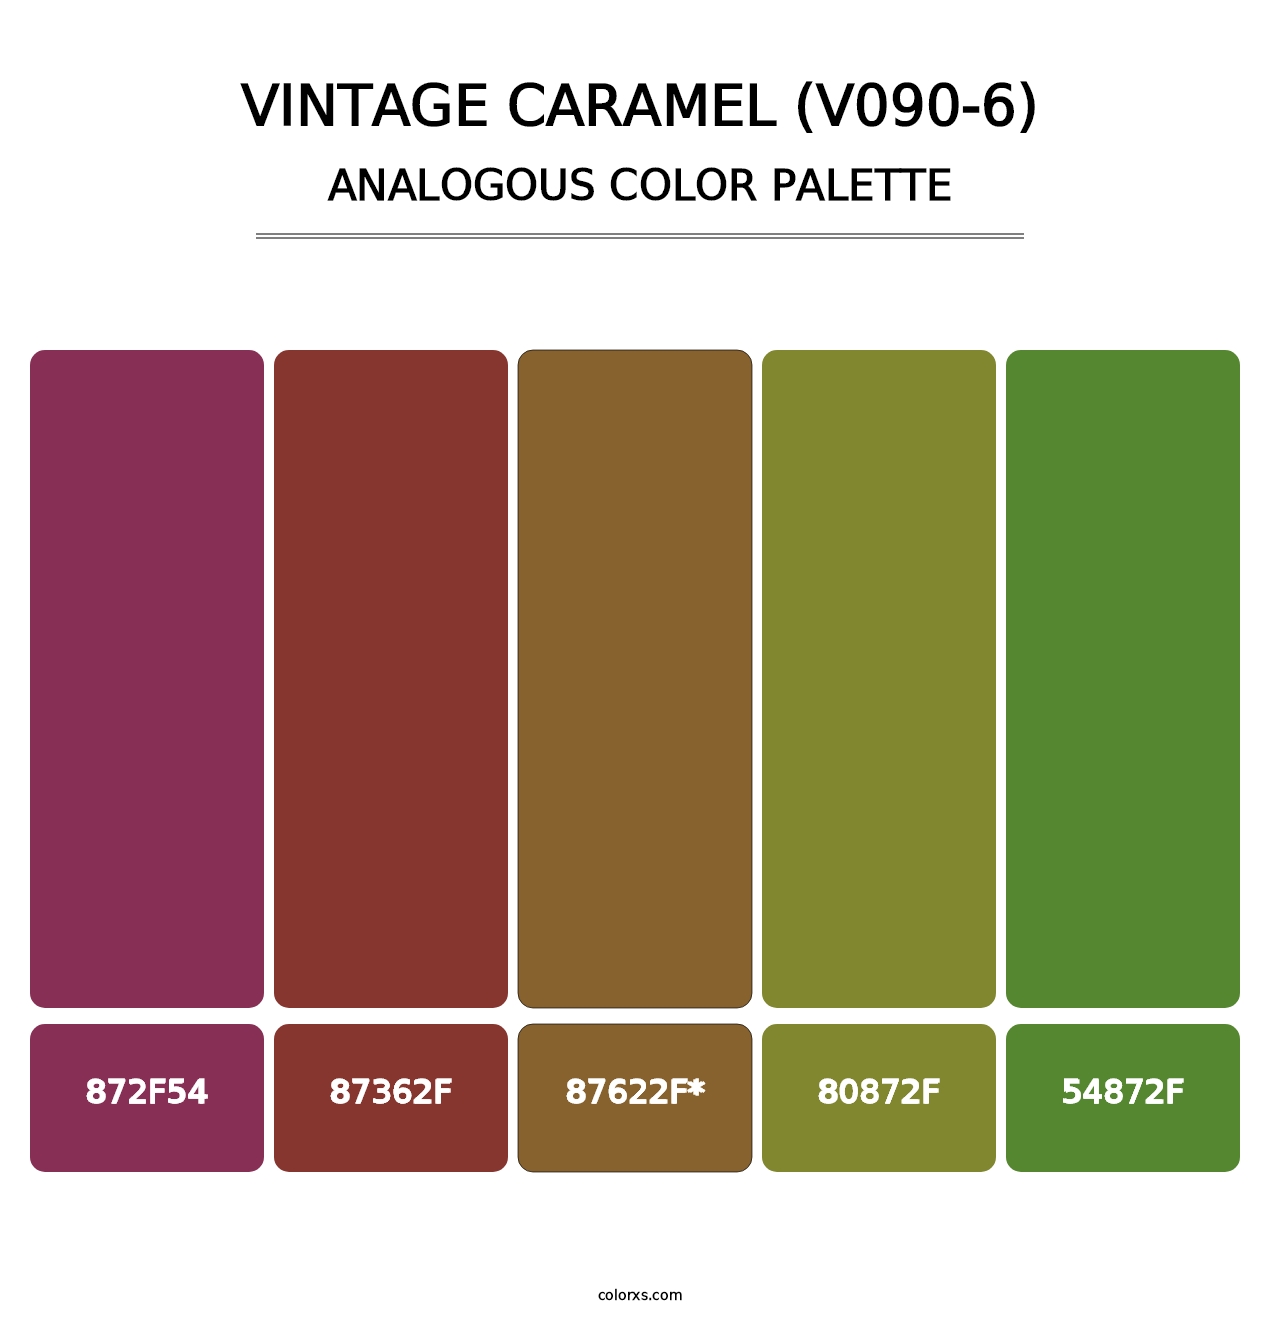 Vintage Caramel (V090-6) - Analogous Color Palette